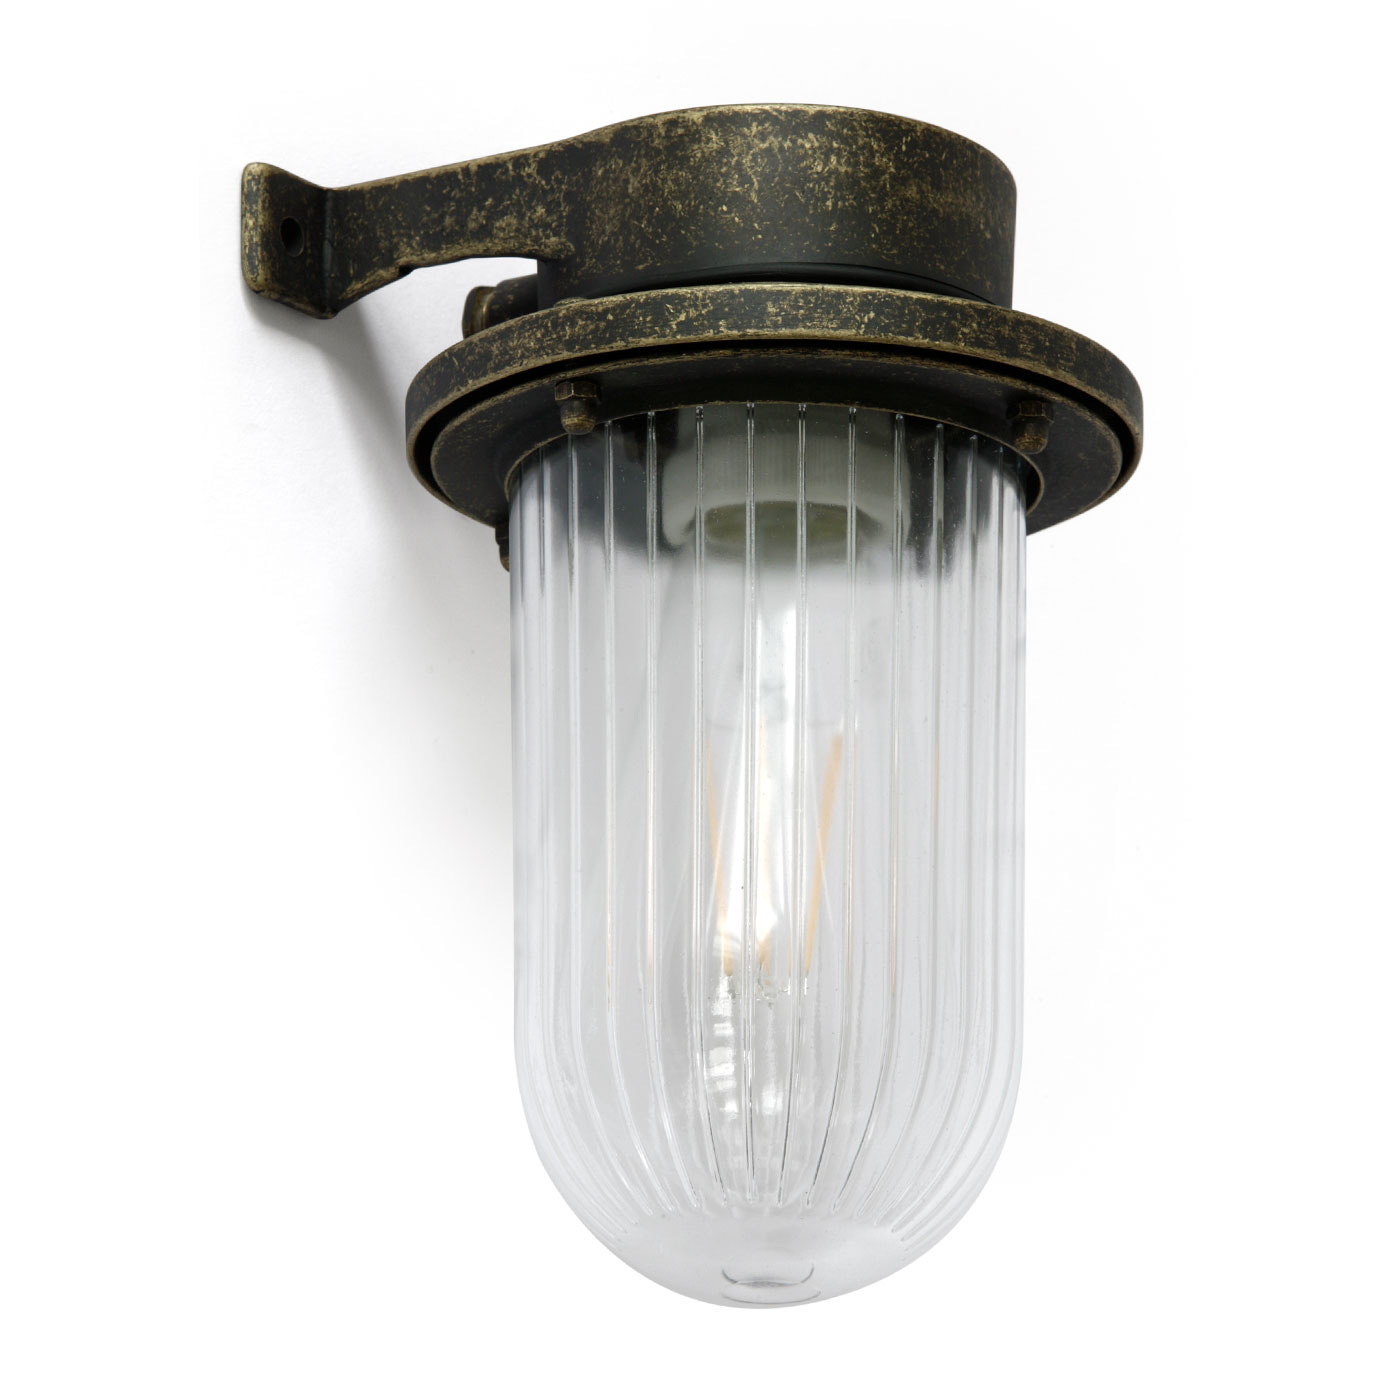 Messingguss-Schiffslampe mit gerilltem Glas-Zylinder, IP64: Kellerlampe im Stil einer Schiffsleuchte mit Glaszylinder, hier in „Messing matt patiniert“